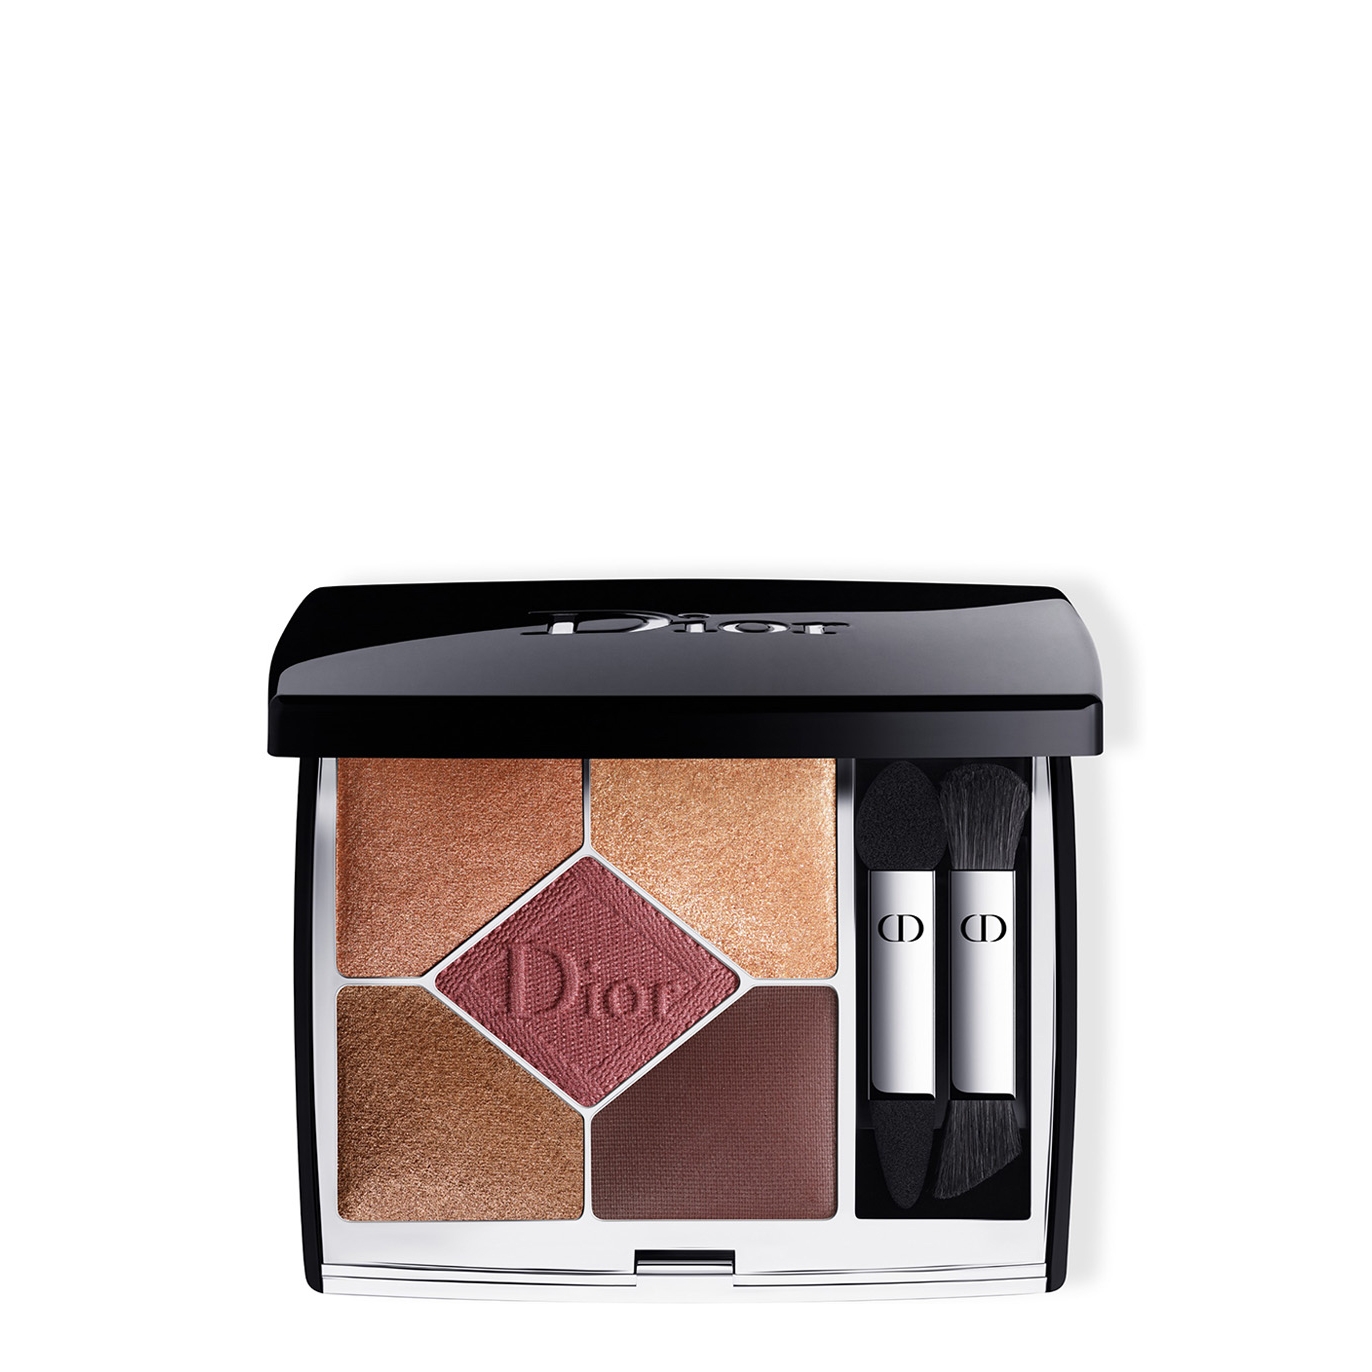 Dior 5 Couleurs Couture Eyeshadow Palette - Colour 689 Mitzah